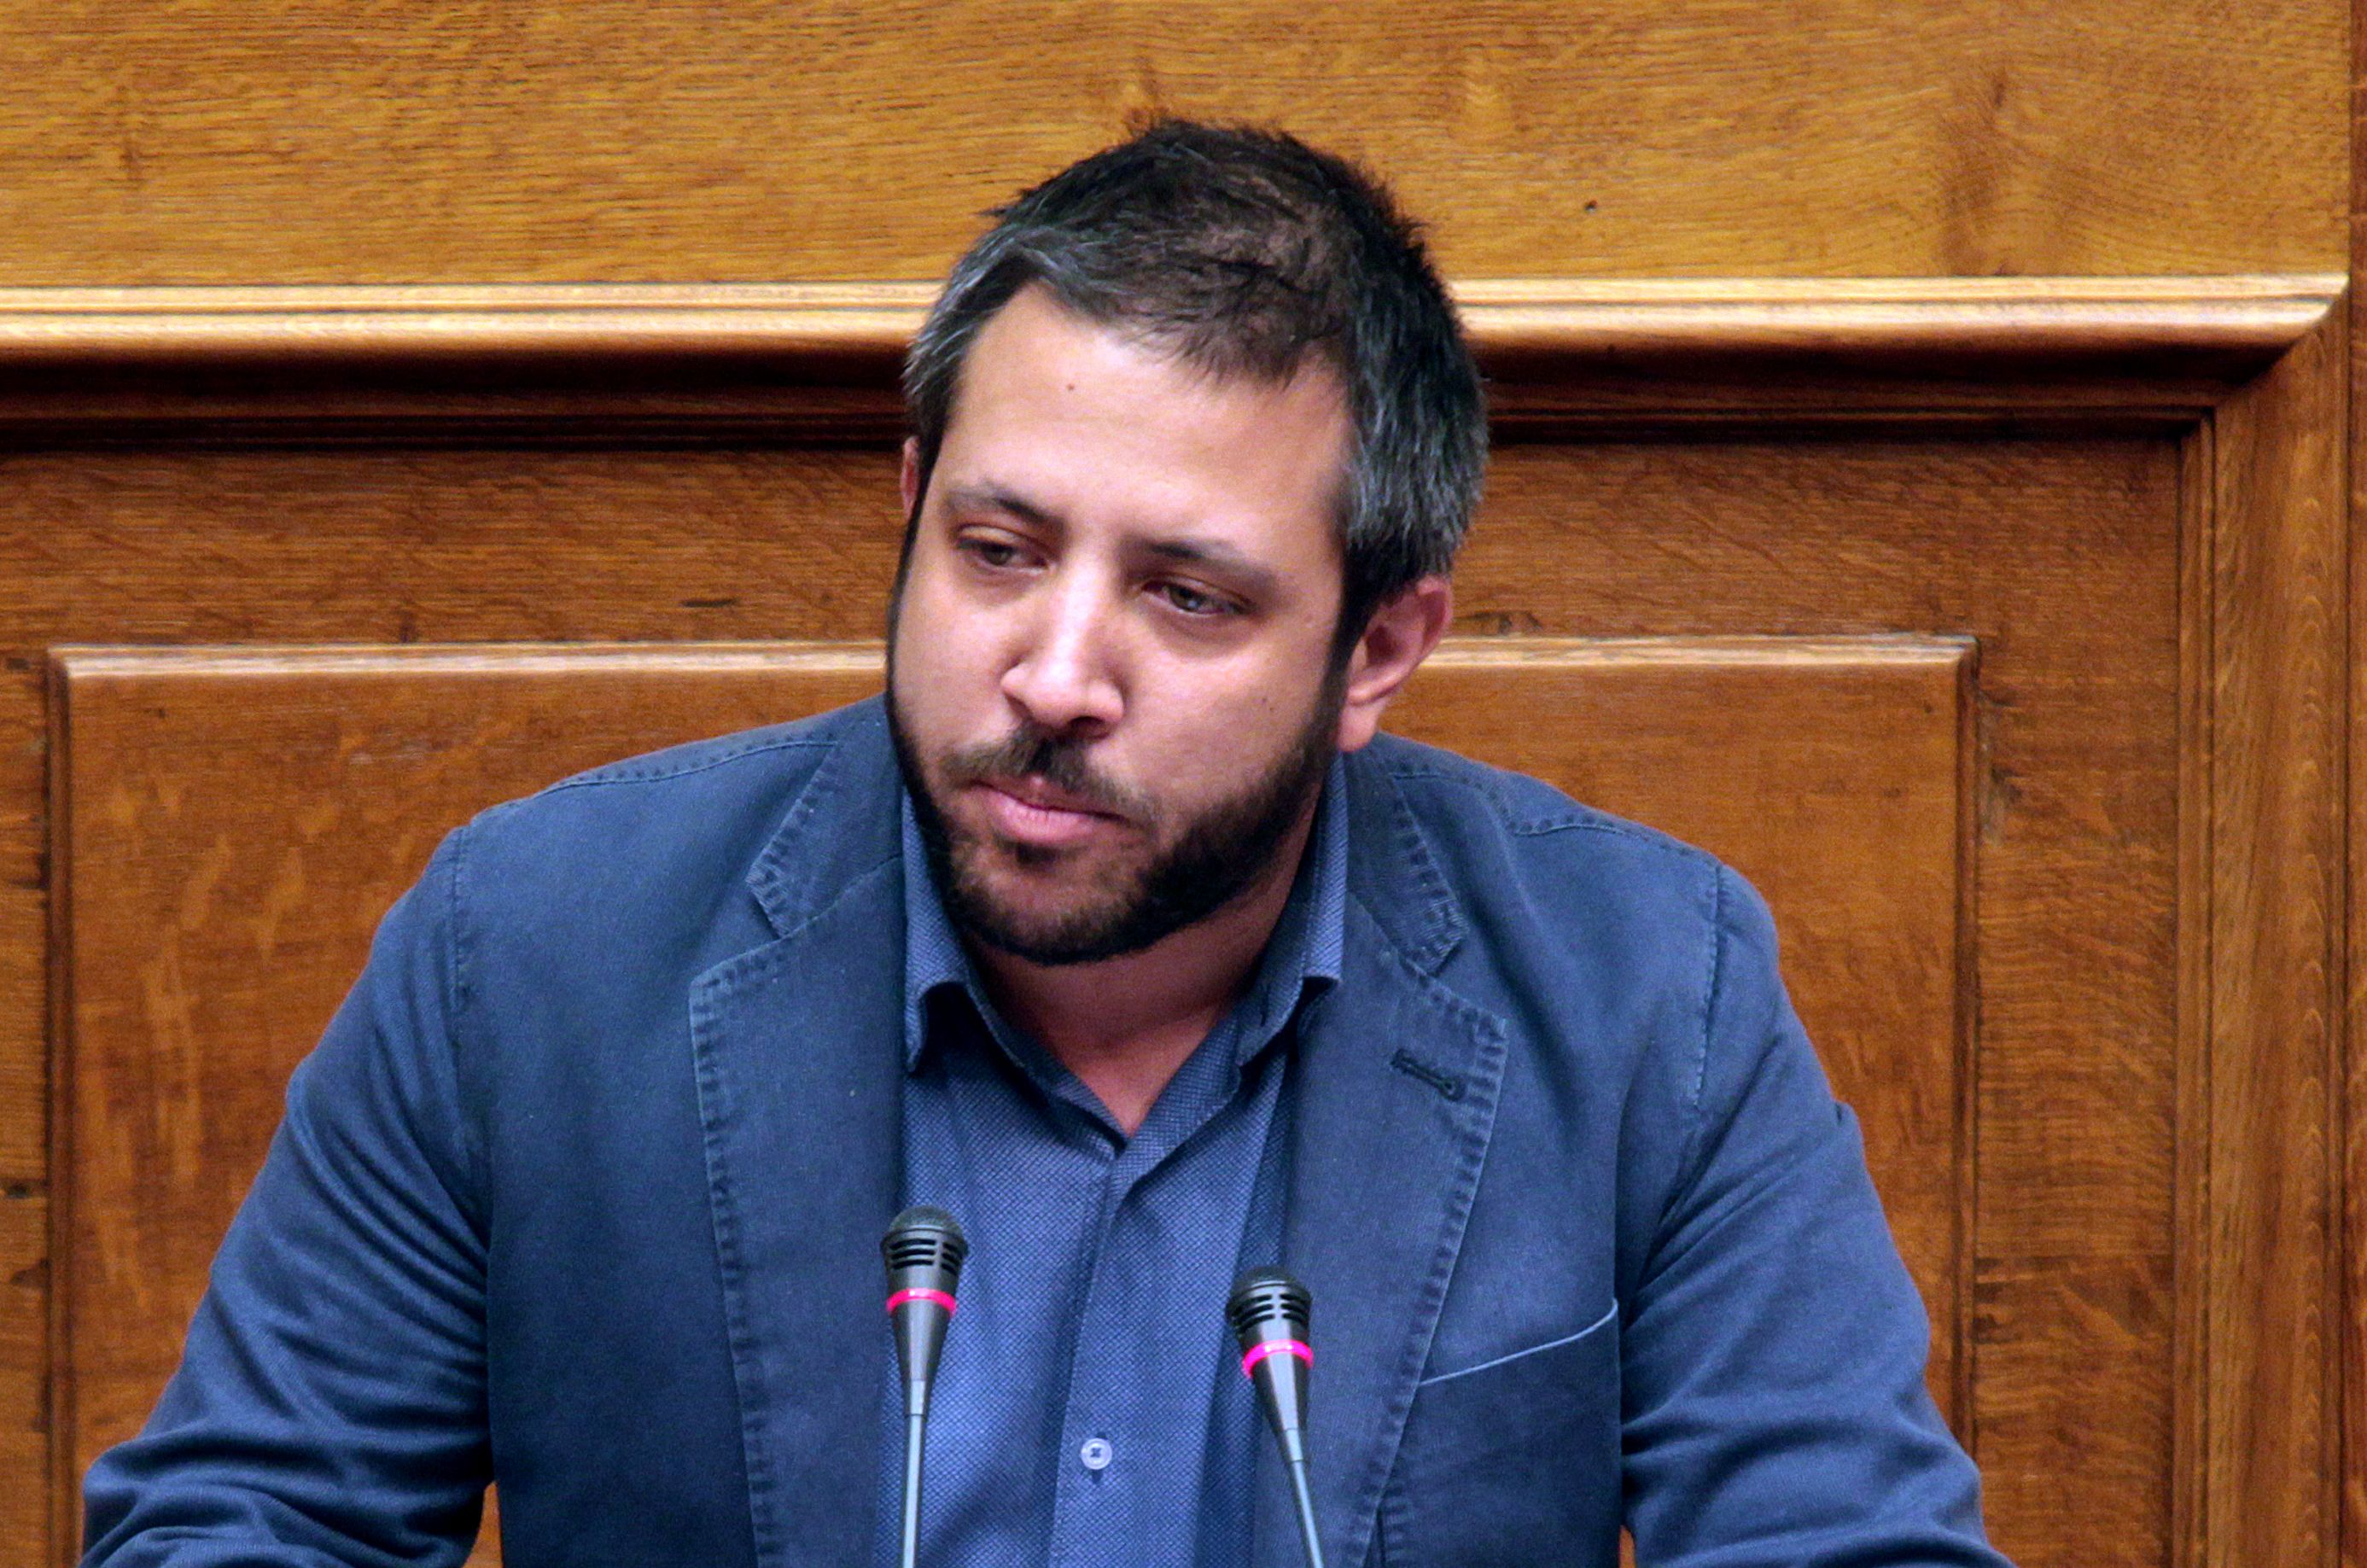 Ο Αλέξανδρος Μεϊκόπουλος για την νέα έγκριση 3 ολιγομελών τμημάτων σε ΕΠΑΛ του Ν. Μαγνησίας